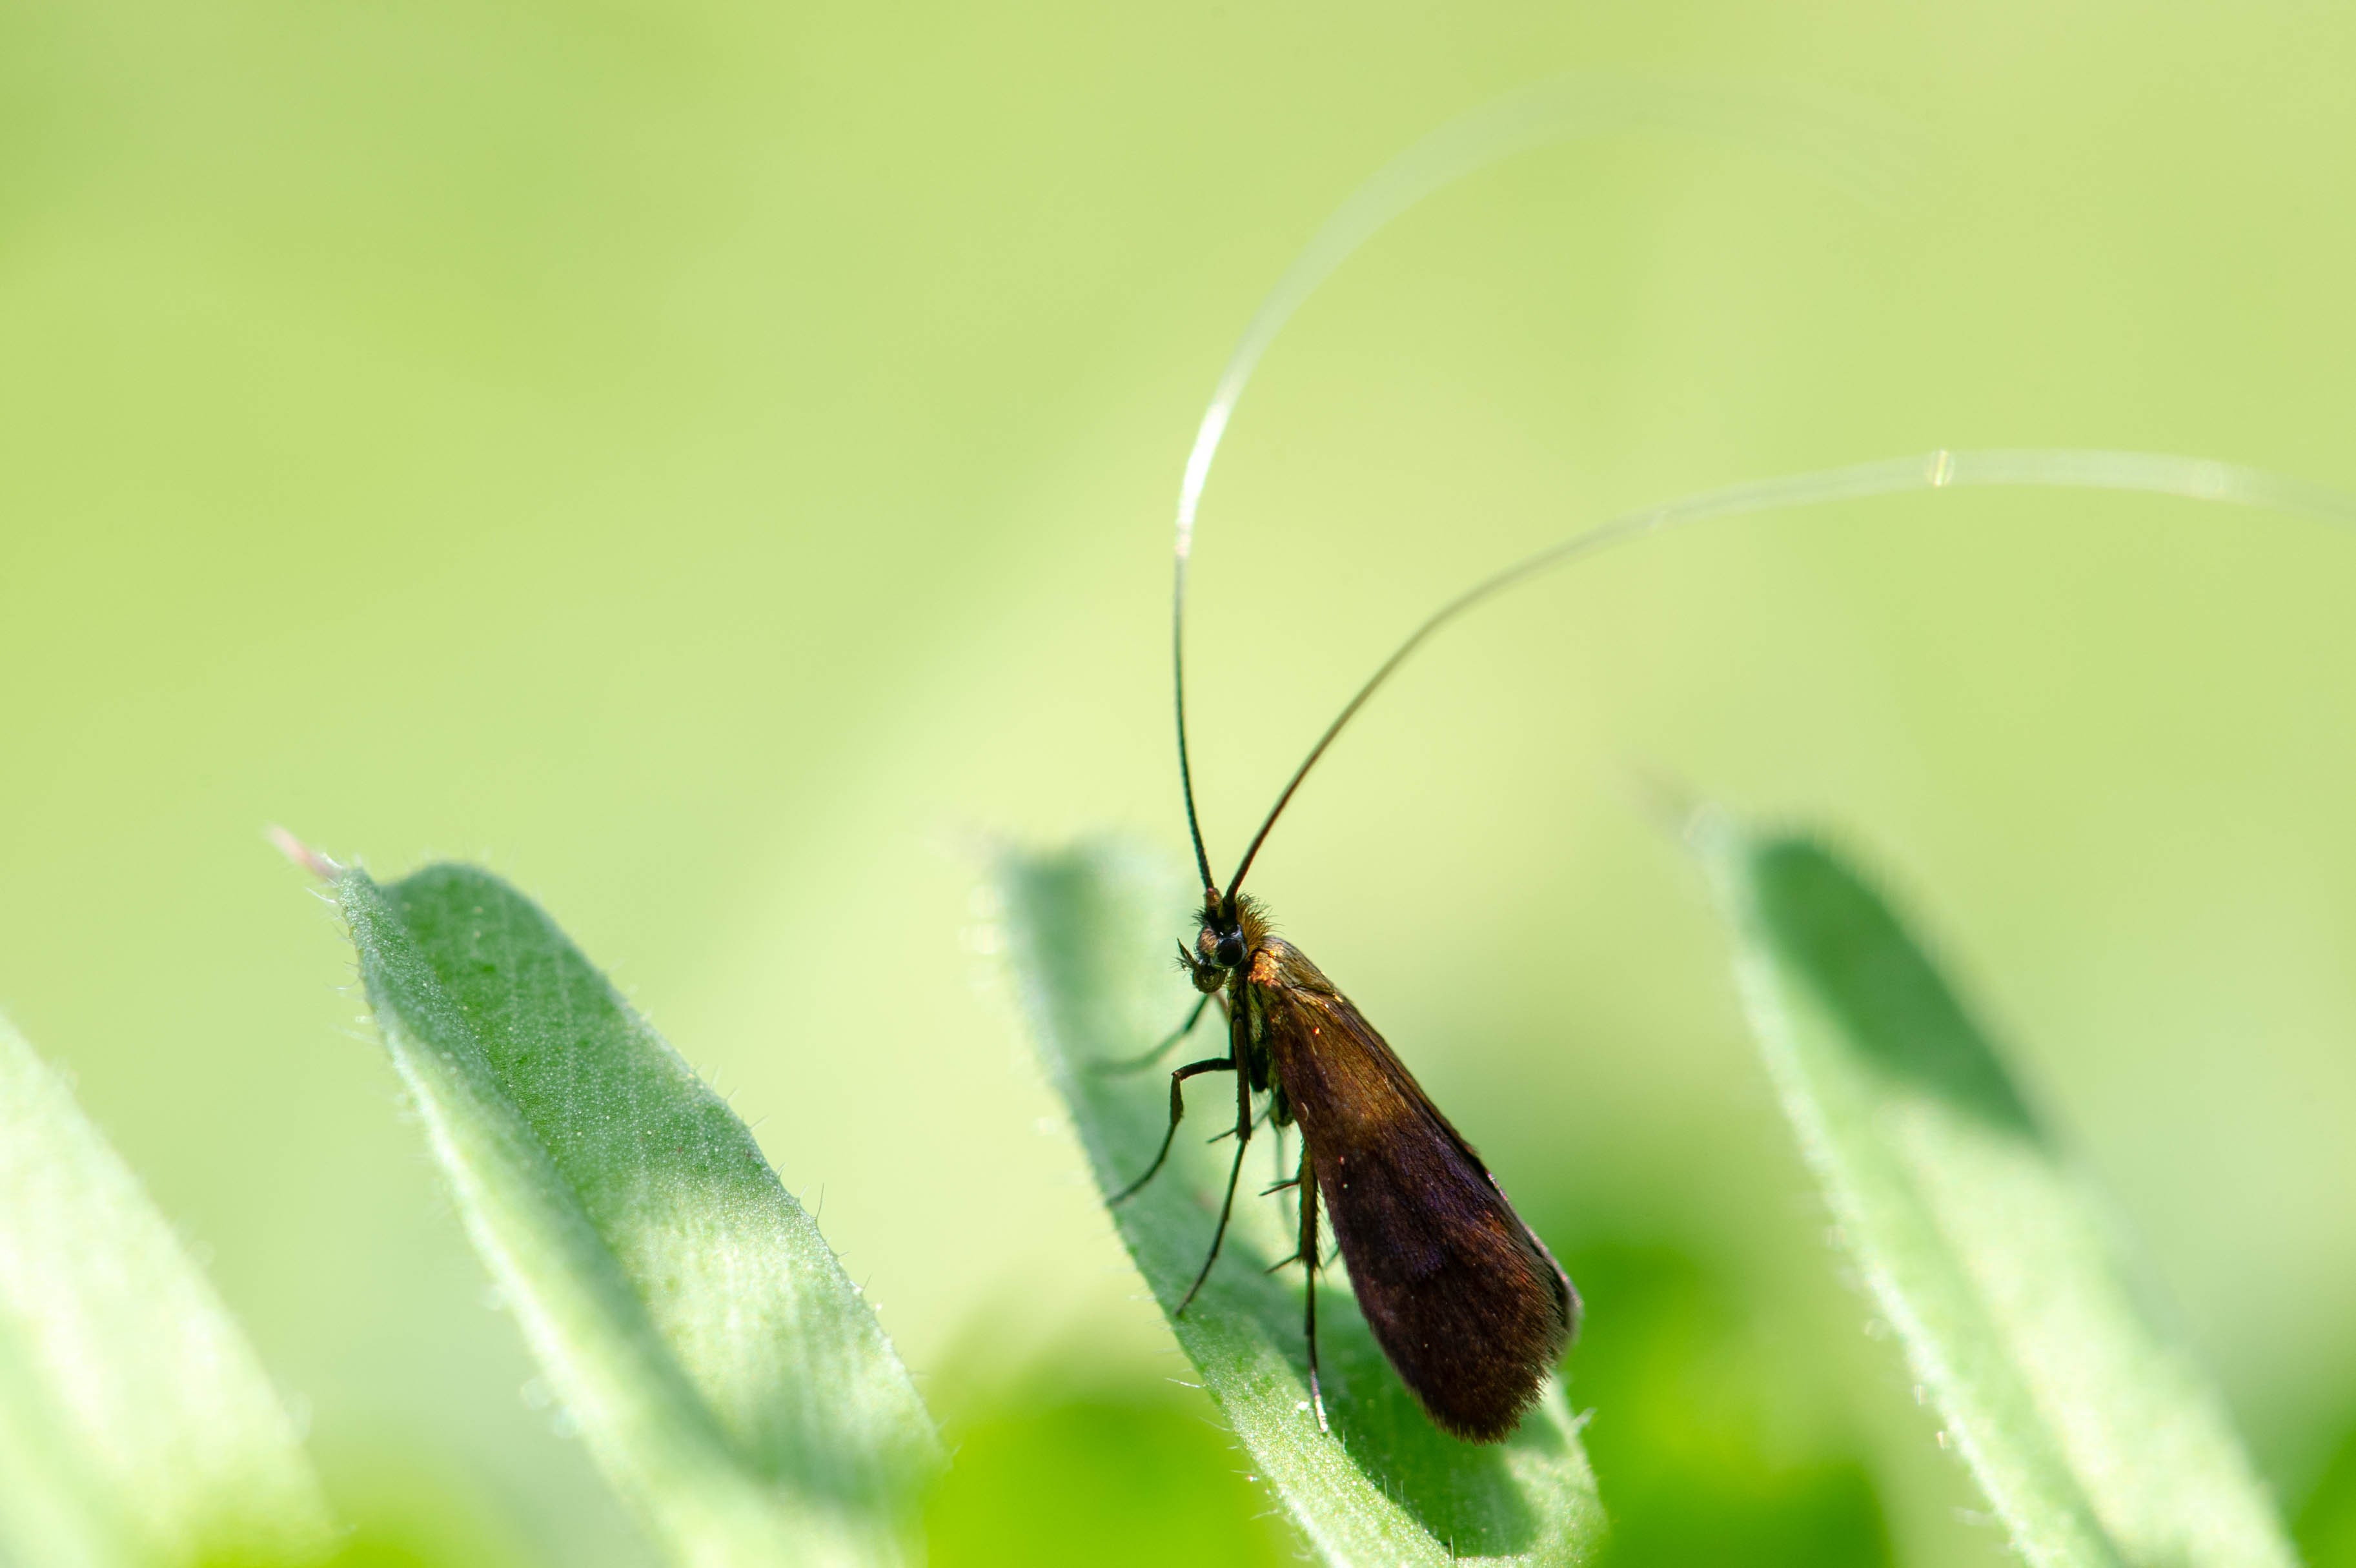 クロハネシロヒゲナガ 虫の写真と生態なら昆虫写真図鑑 ムシミル